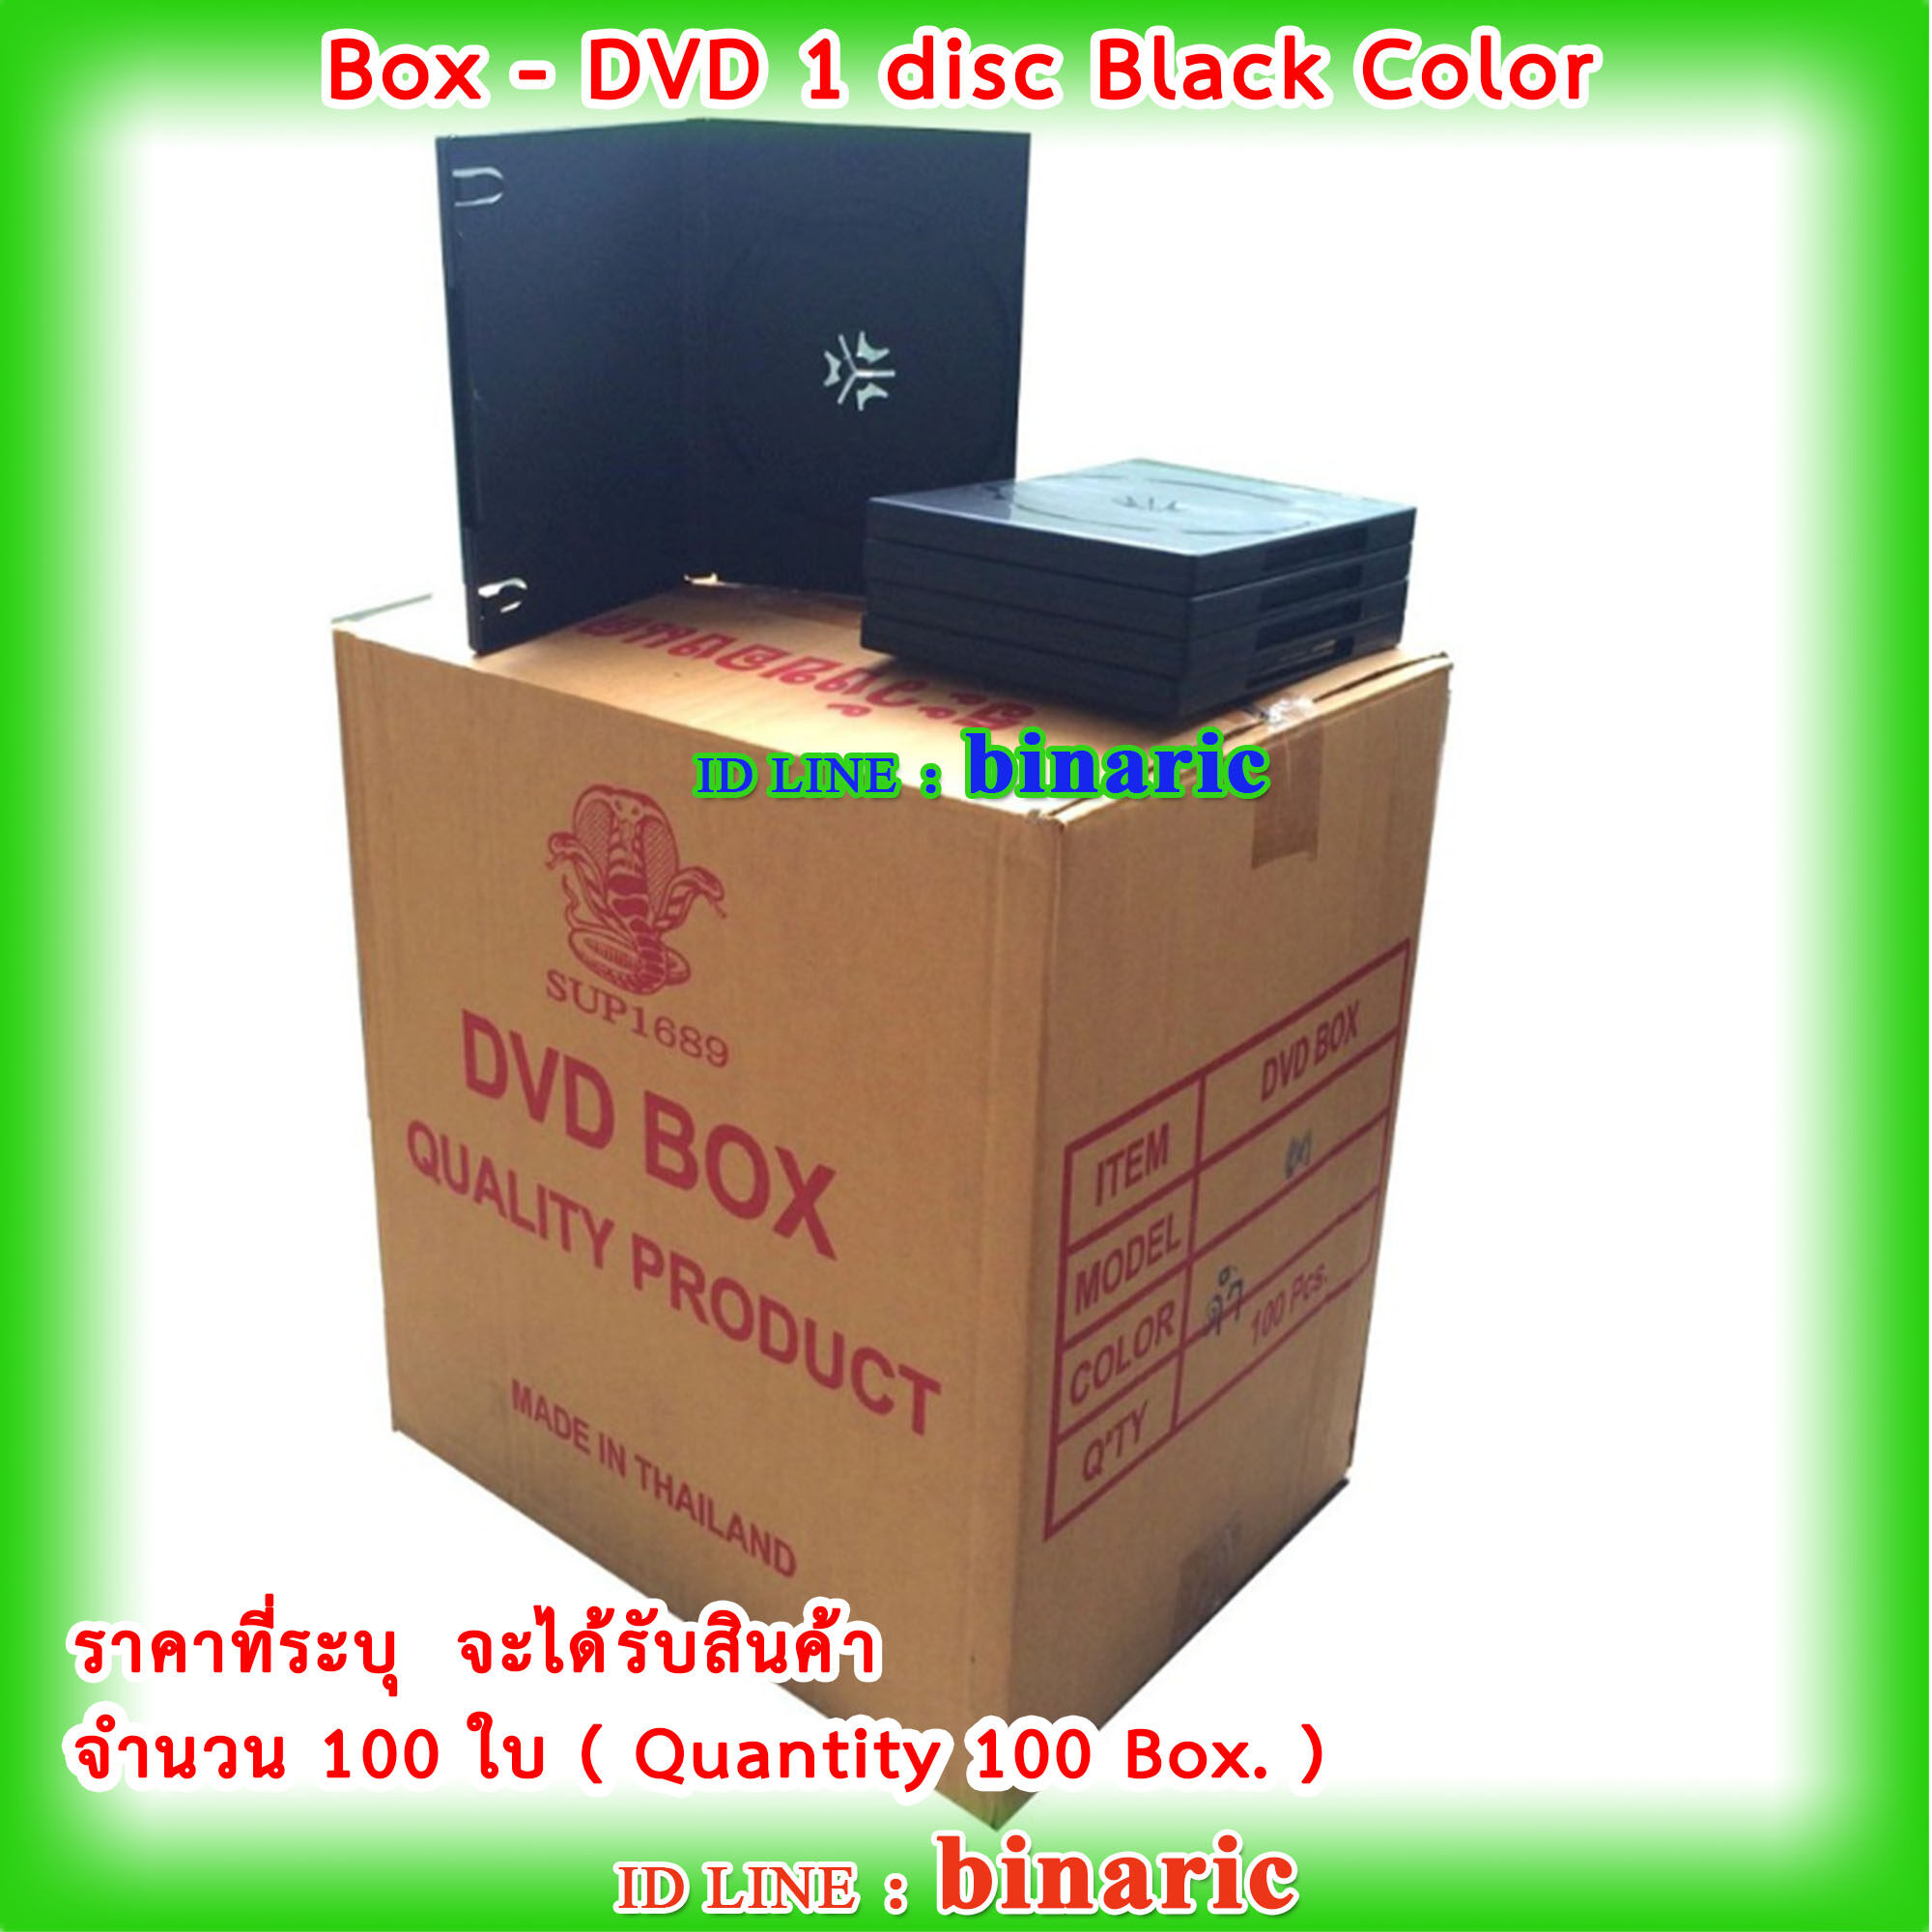 Box DVD 1 disc Black Color ( Qty. 100 box. ) / กล่องดีวีดี1หน้าดำ / กล่องดีวีดี 1 DVD สีดำ จำนวน  100 ใบ